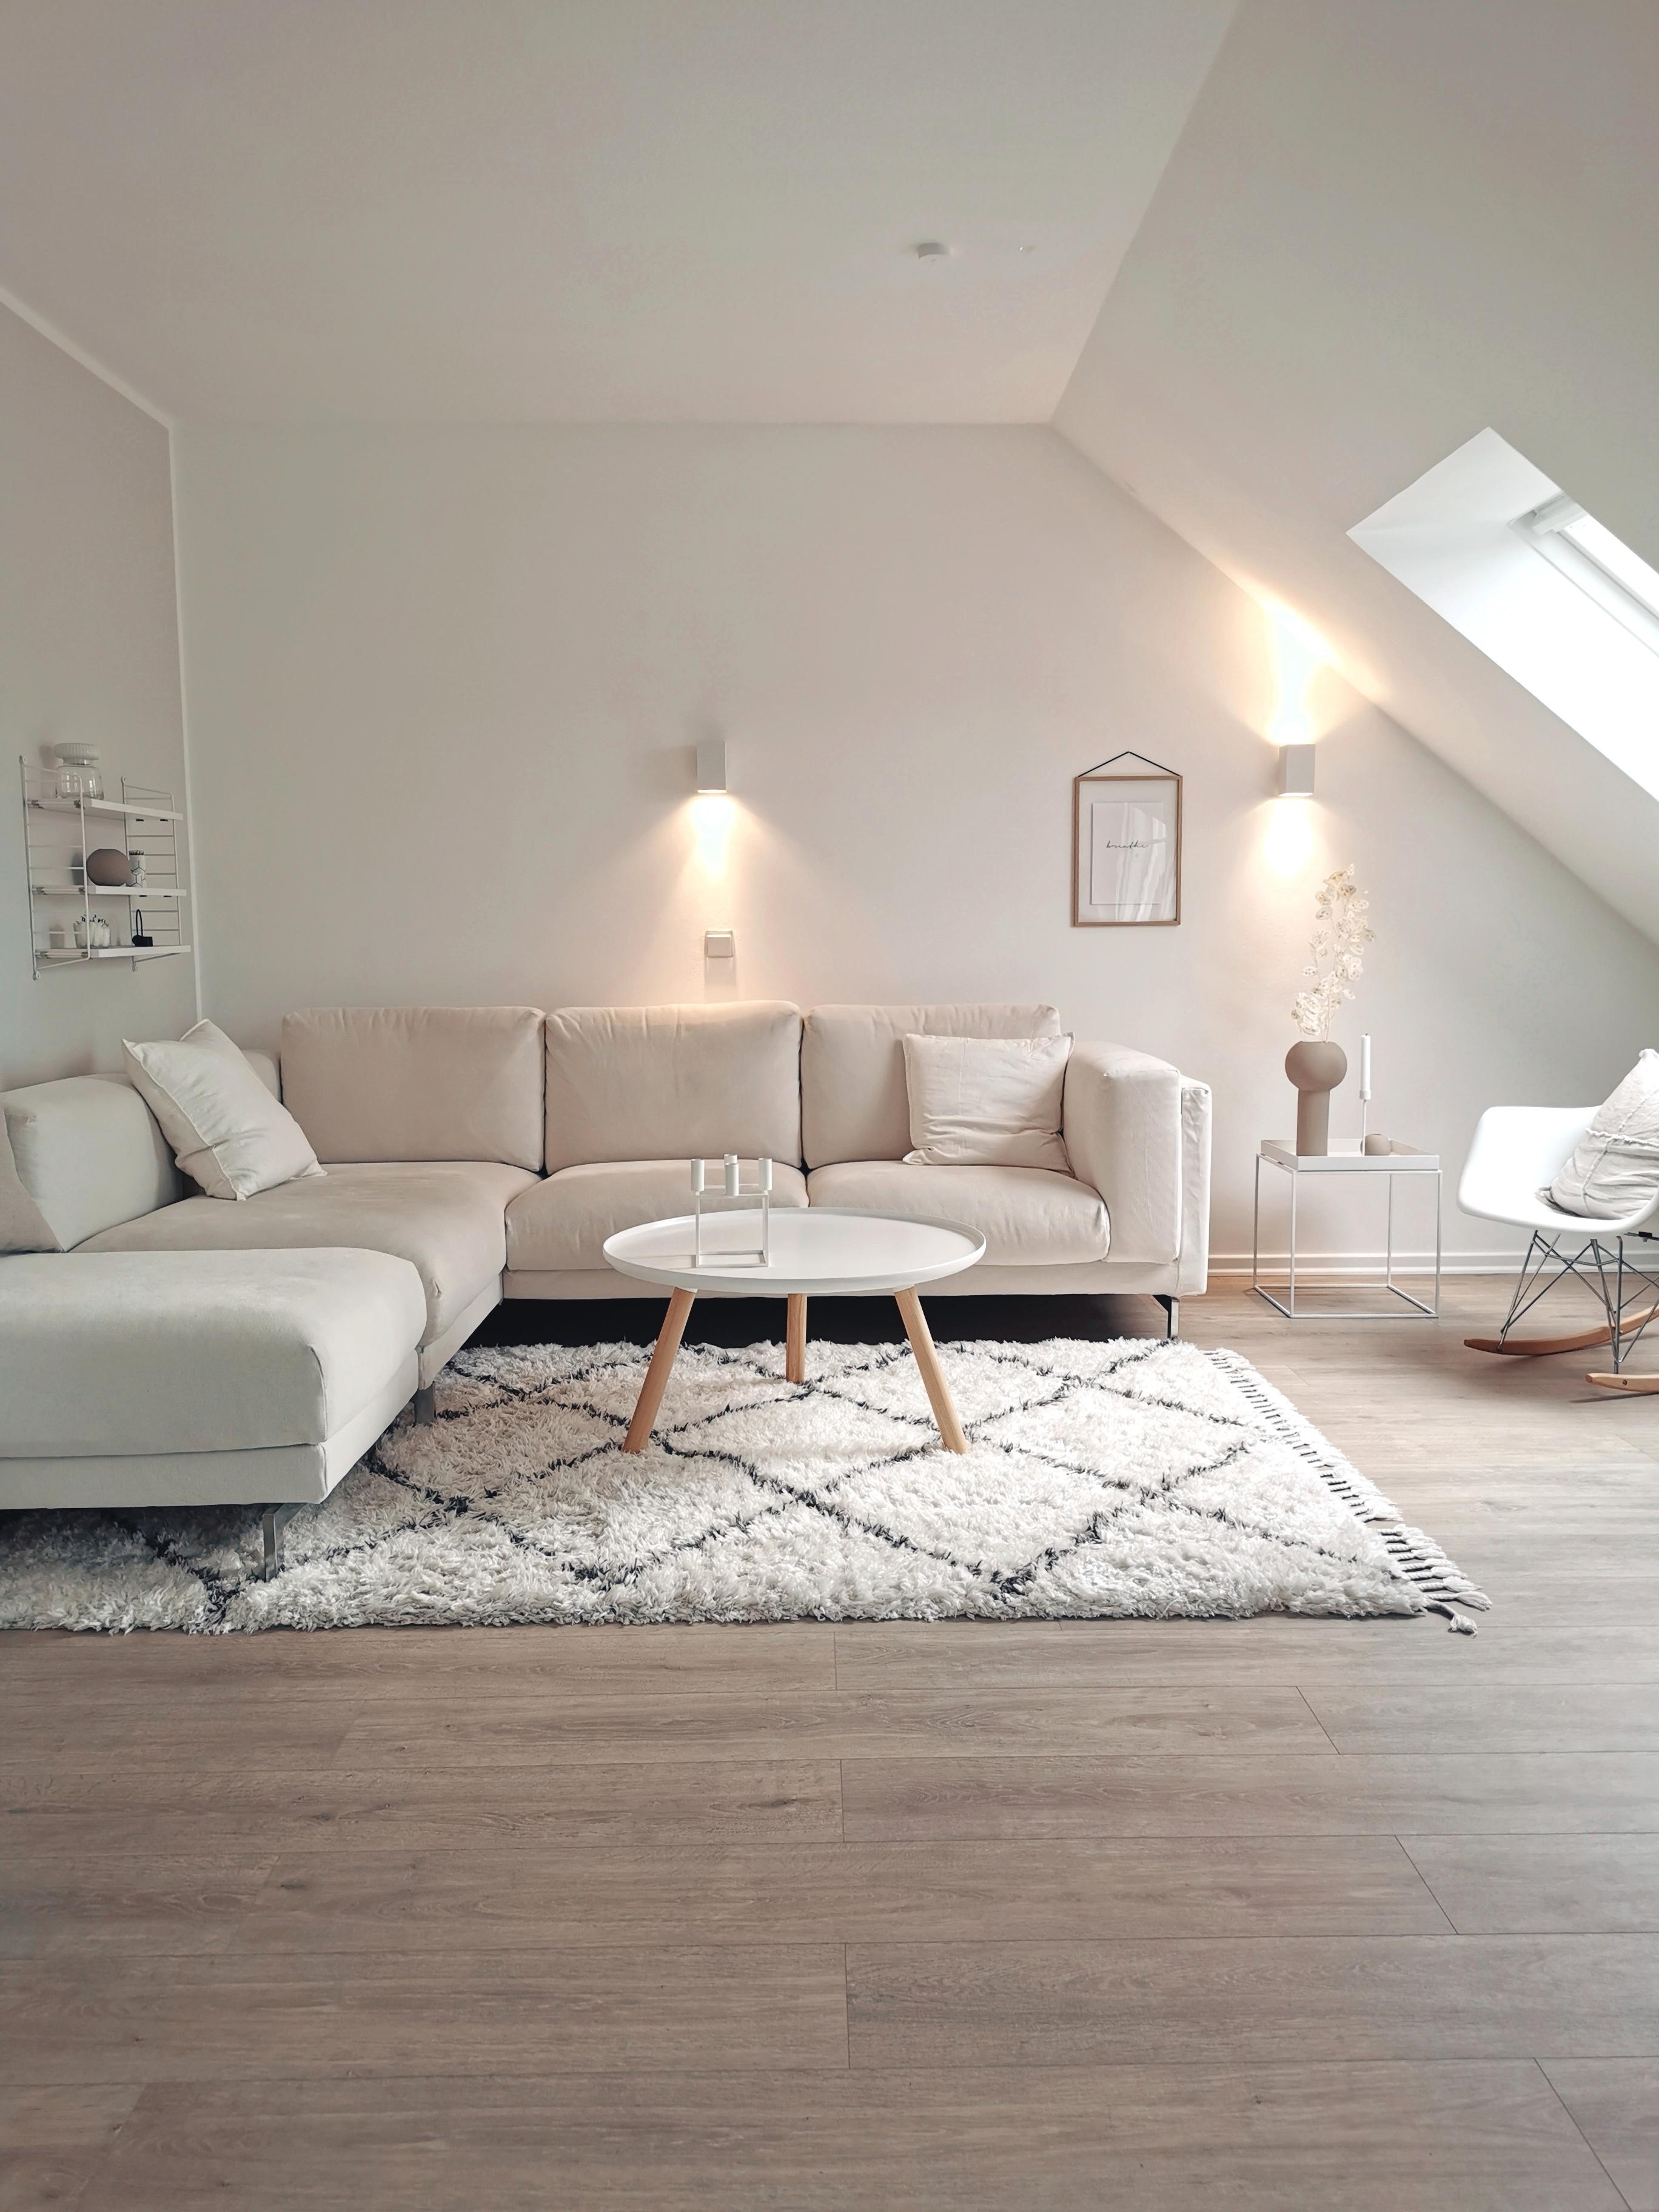 Mögt ihr auch so gern Räume, die Leichtigkeit und Ruhe ausstrahlen? #livingchallenge #scandistyle #skandinavischwohnen